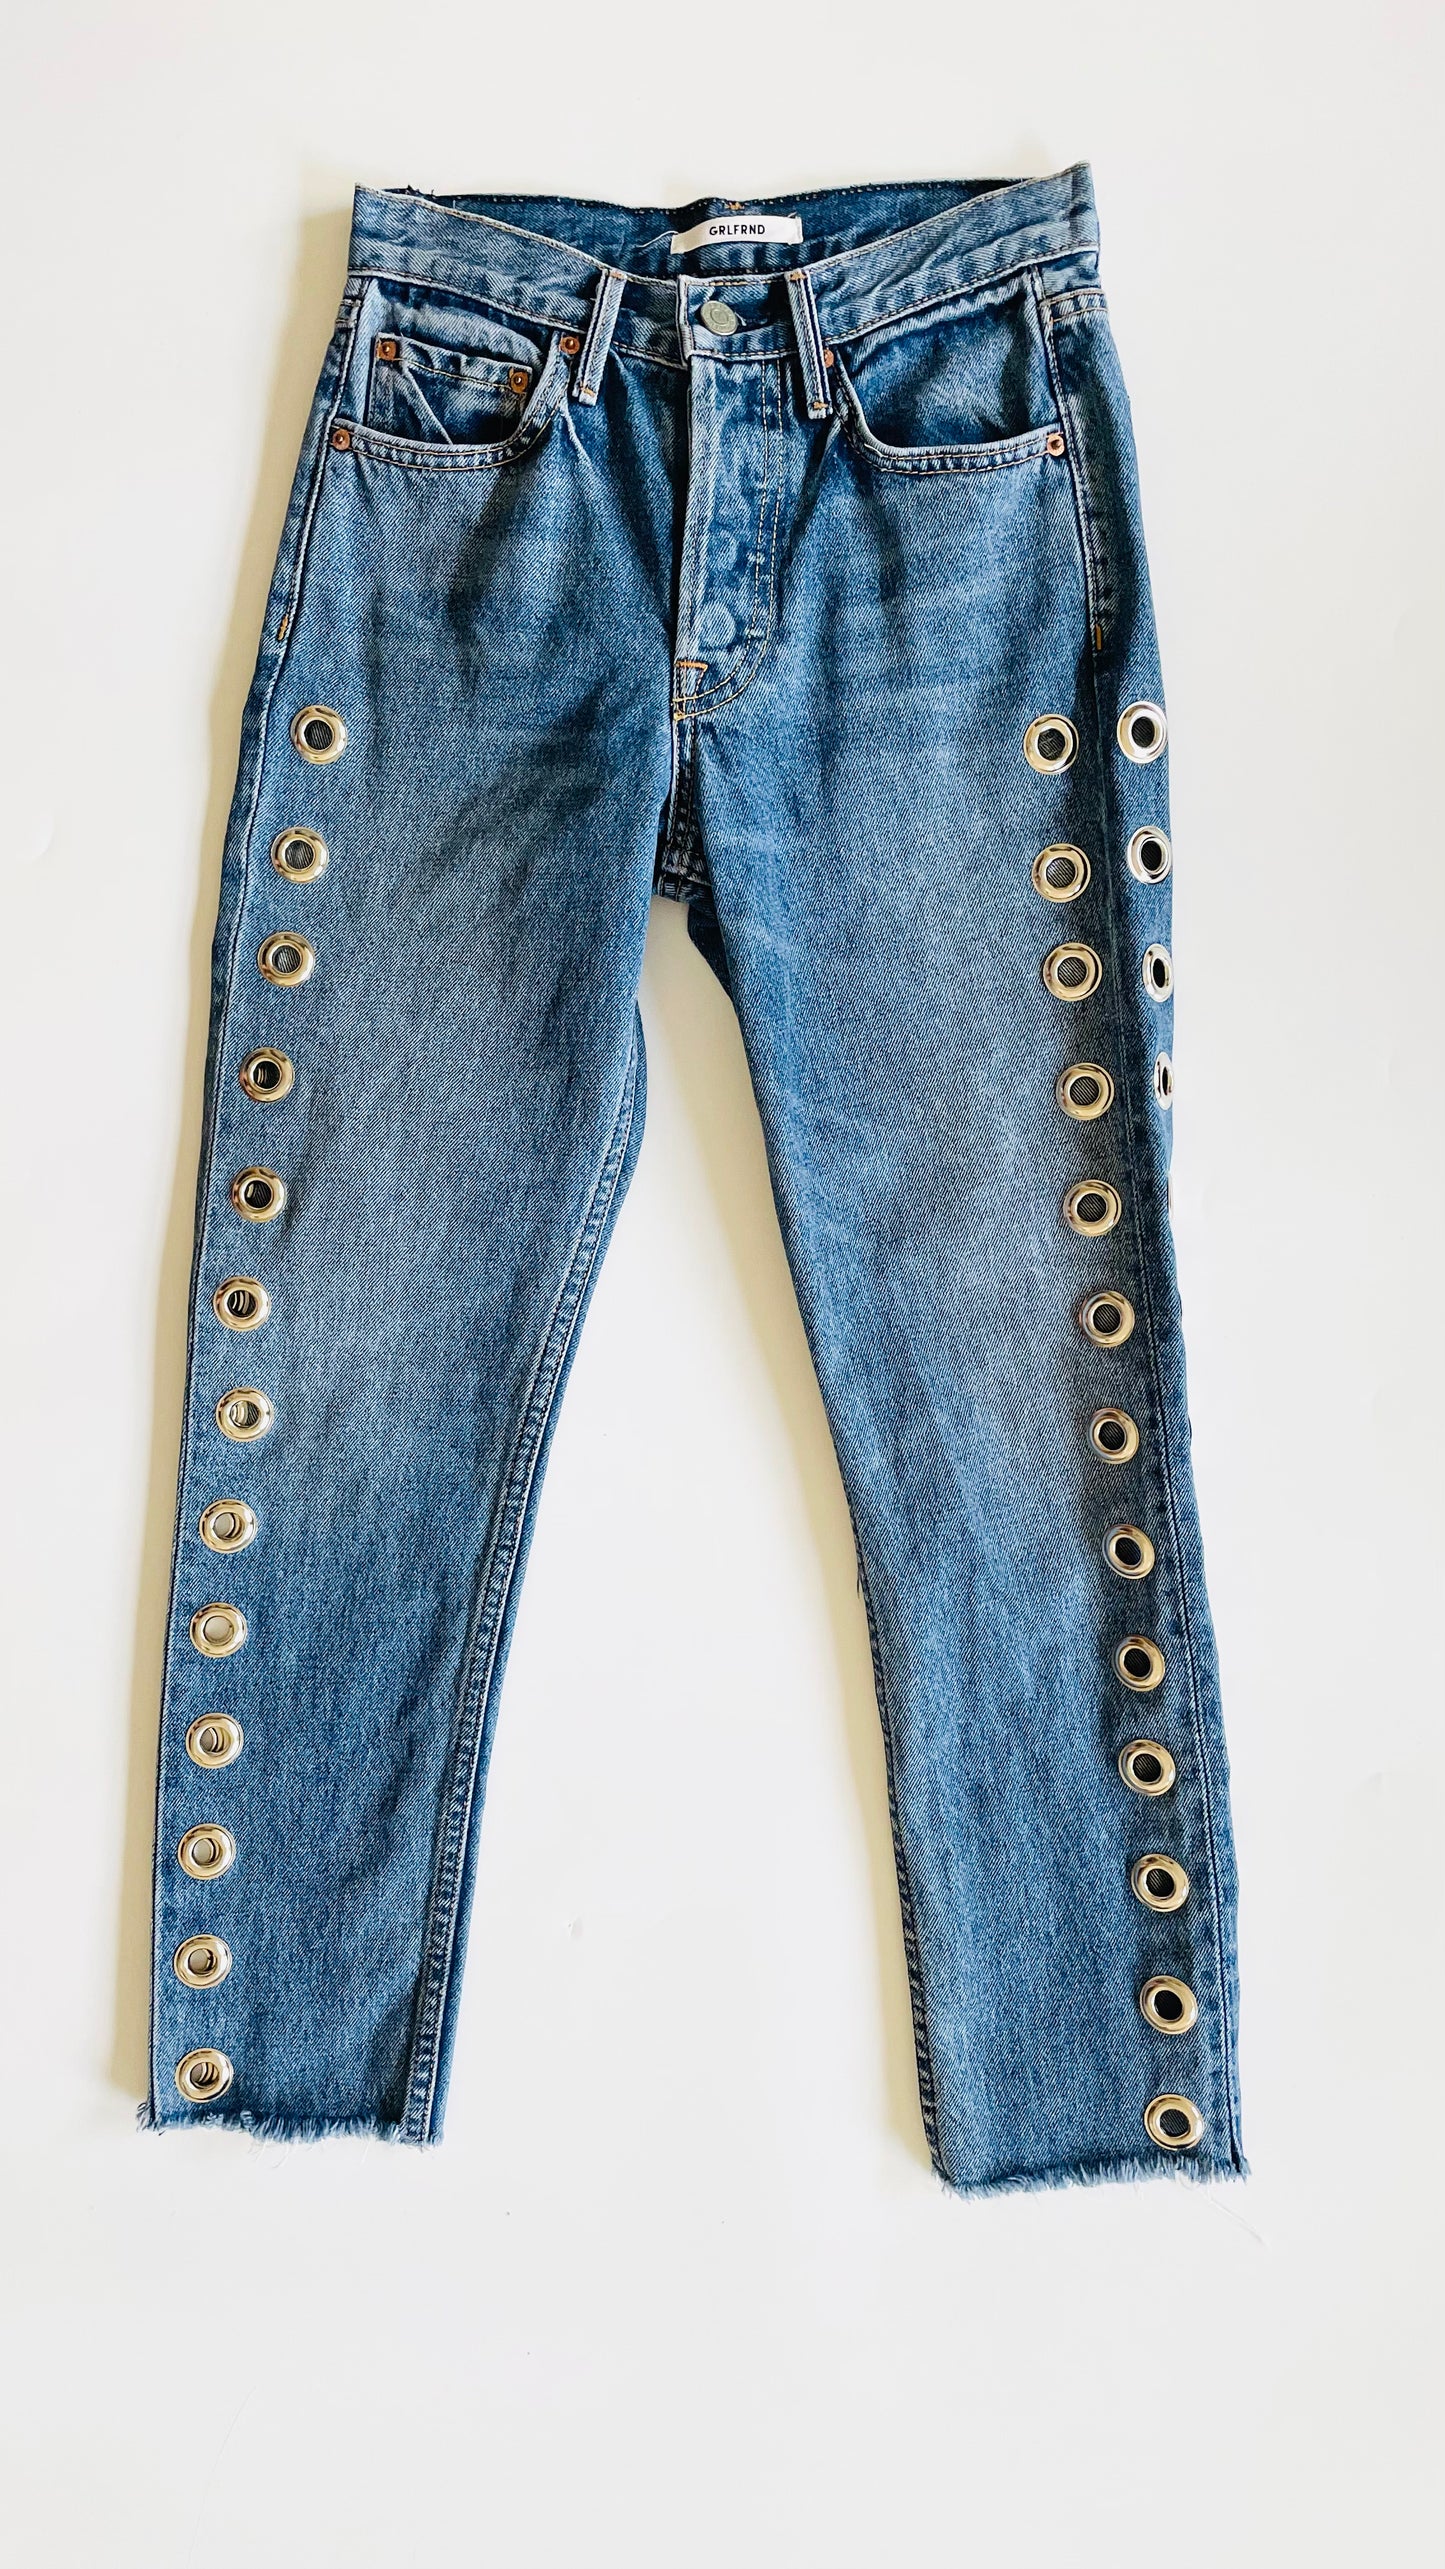 Pre-Loved GRLFRND mid blue vintage wash slim fit jeans - Size 23 x 24